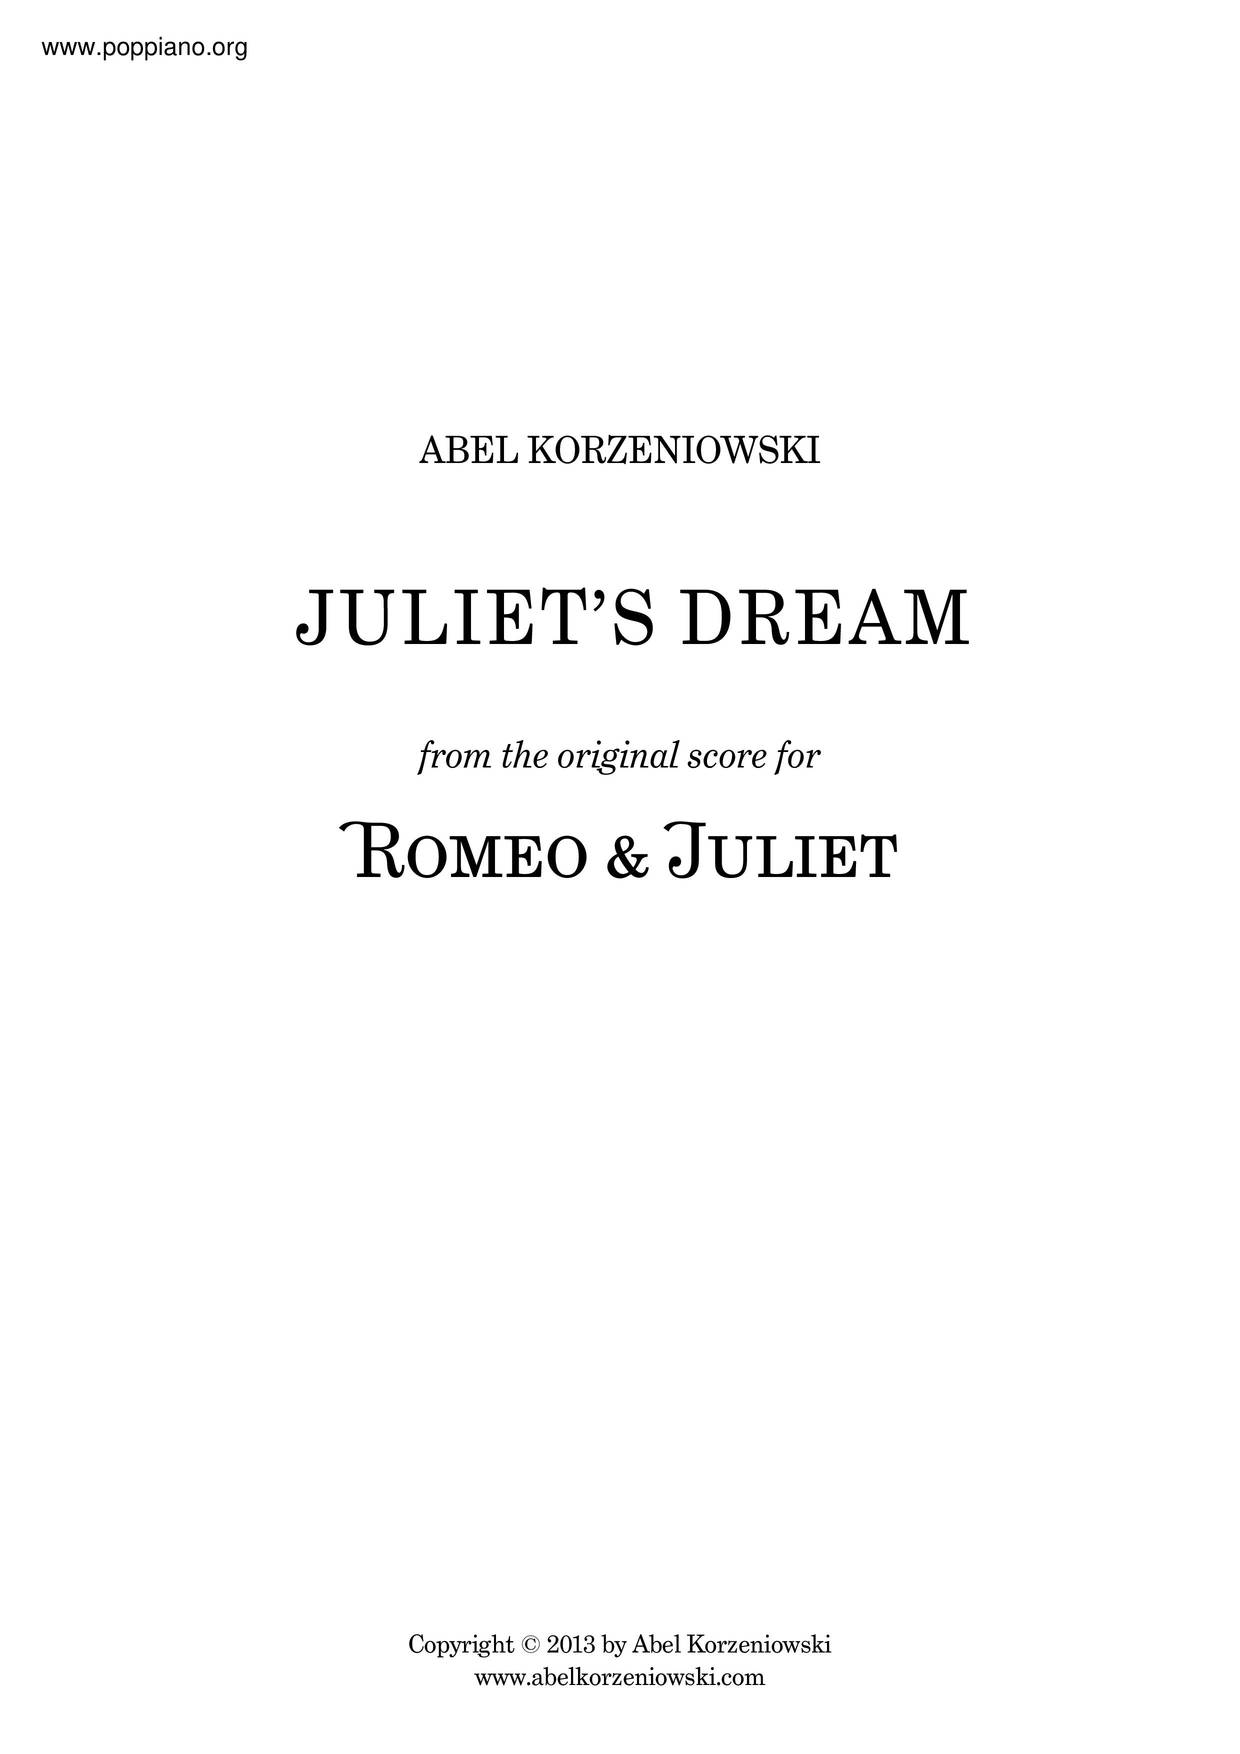 Romeo & Juliet - Juliet's Dream Score